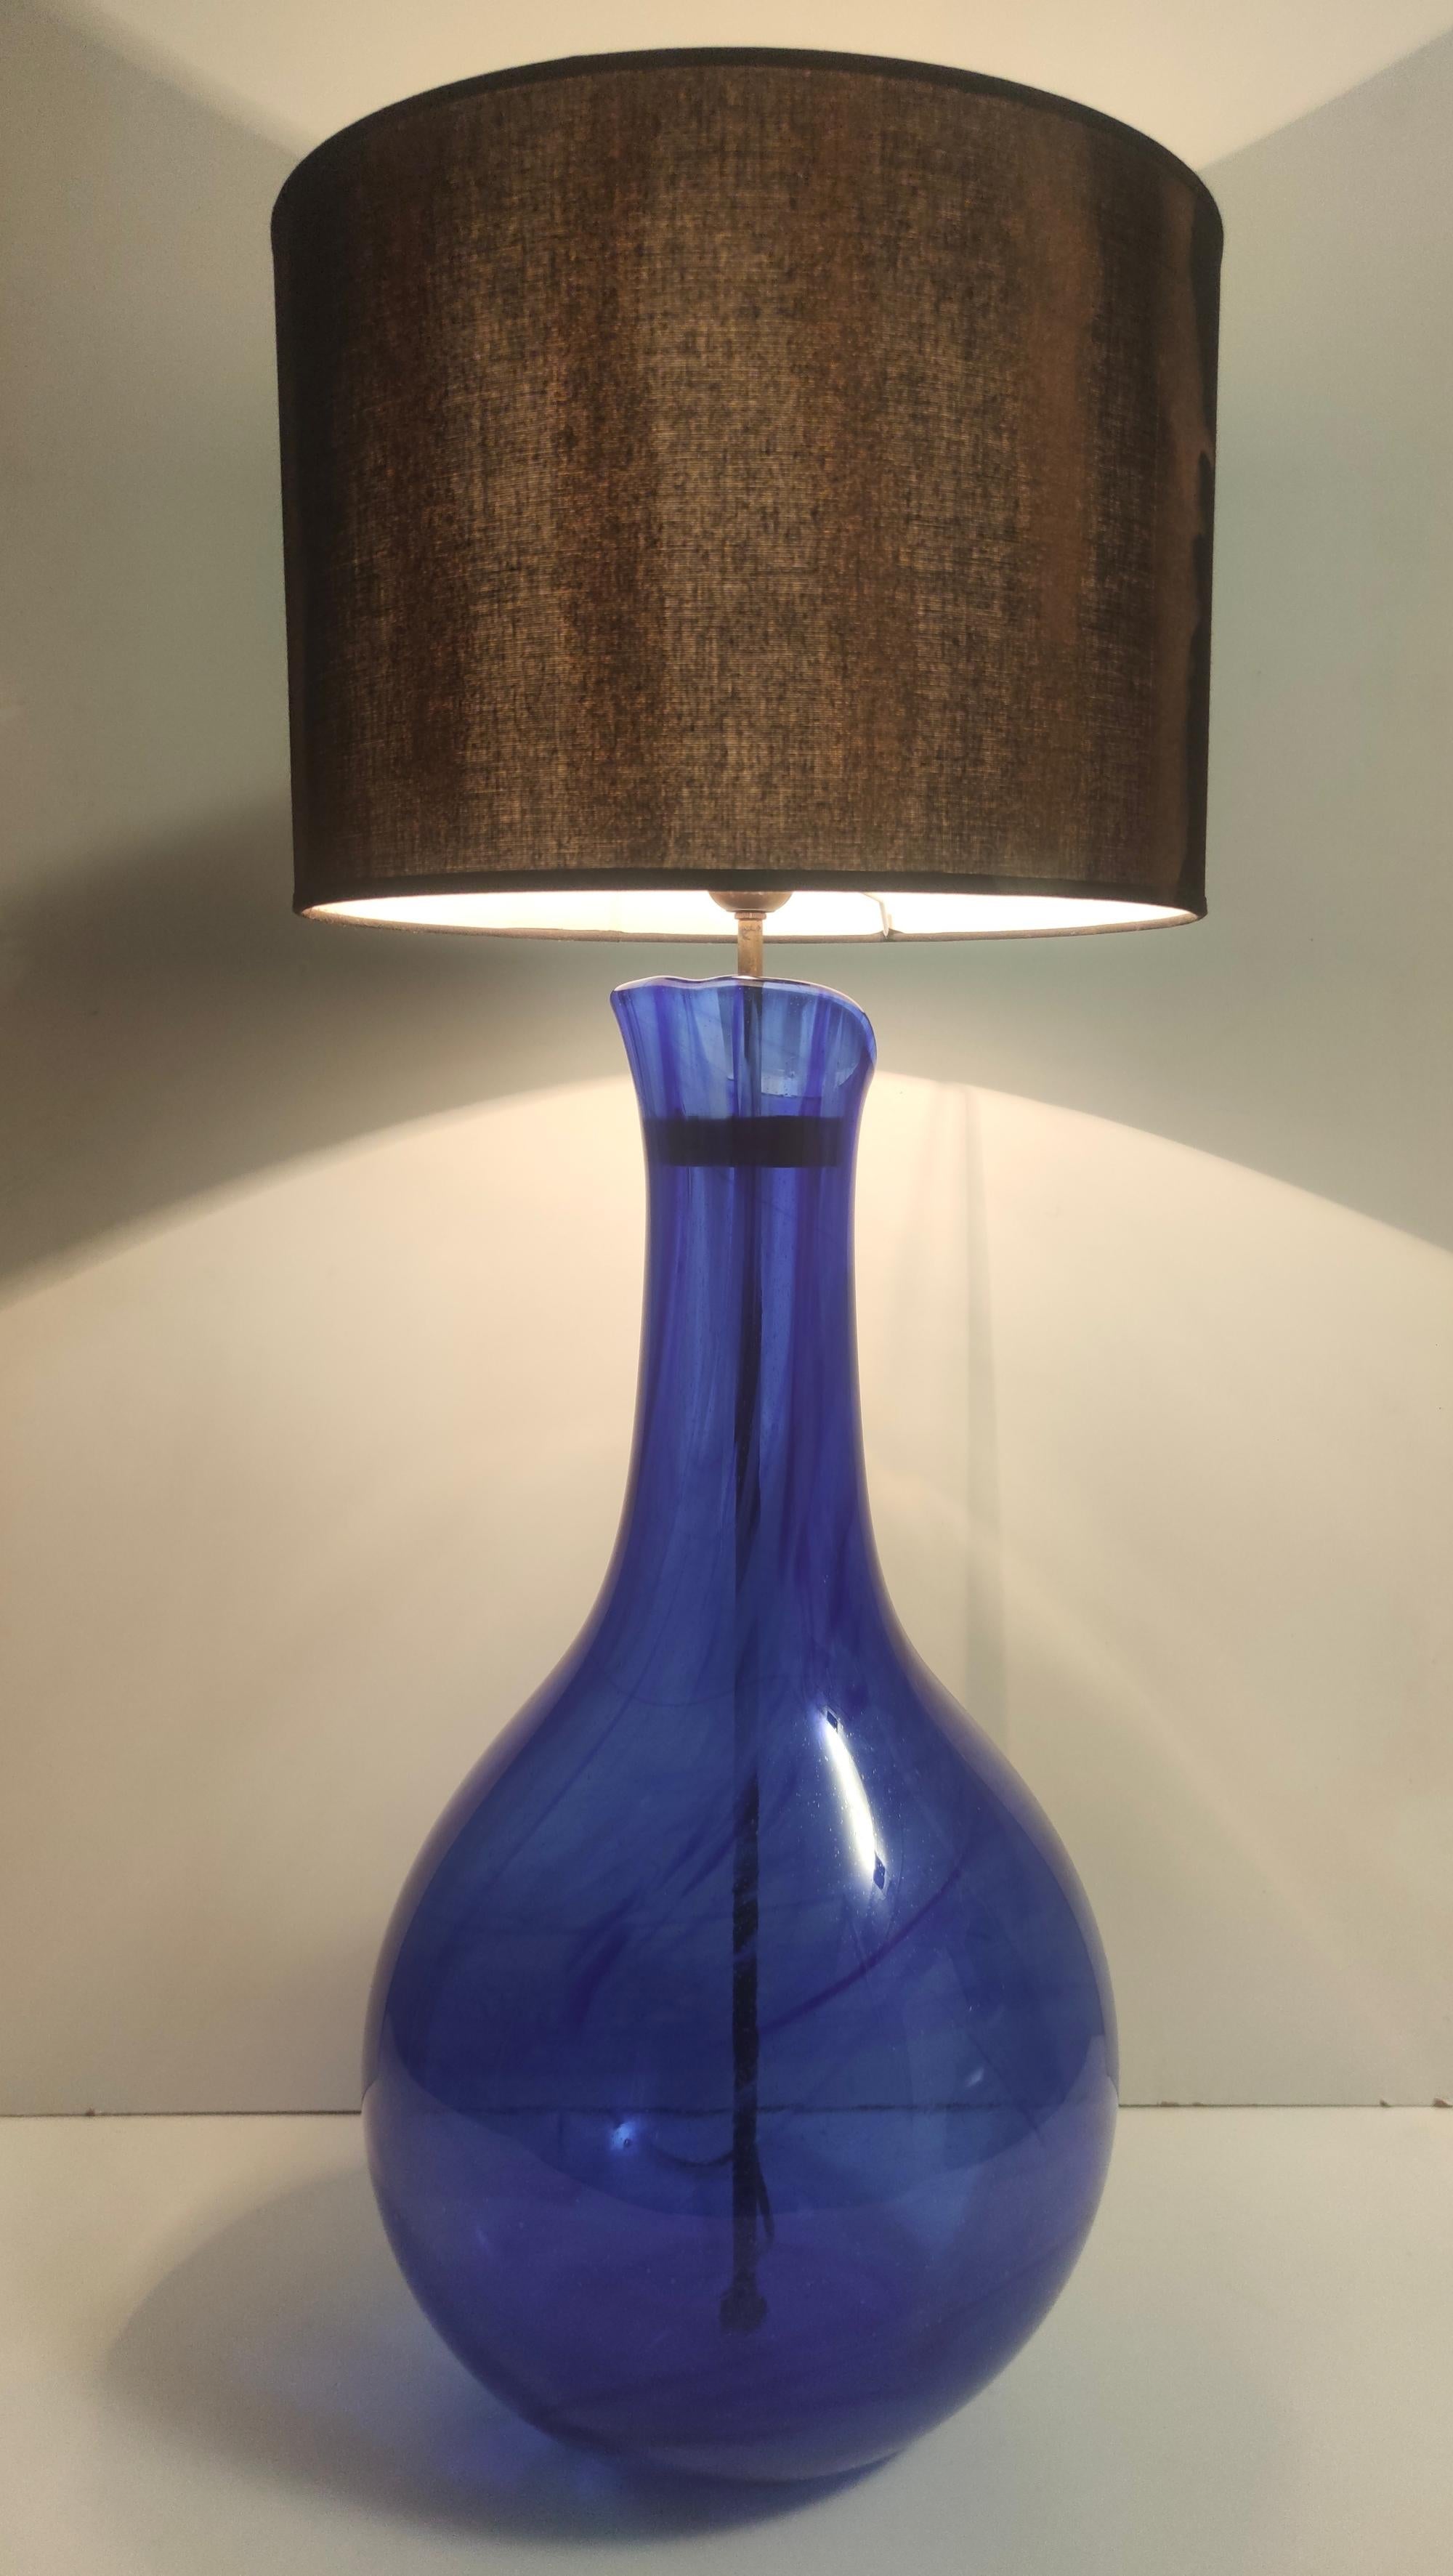 Hergestellt in Italien, 1960er - 1970er Jahre.
Der Sockel der Lampe besteht aus blauem Murano-Glas, das aufgrund des handwerklichen Prozesses Blasen und angenehme Transparenzen und Adern aufweist. 
Die Verkabelung wurde erneuert und ist kompatibel